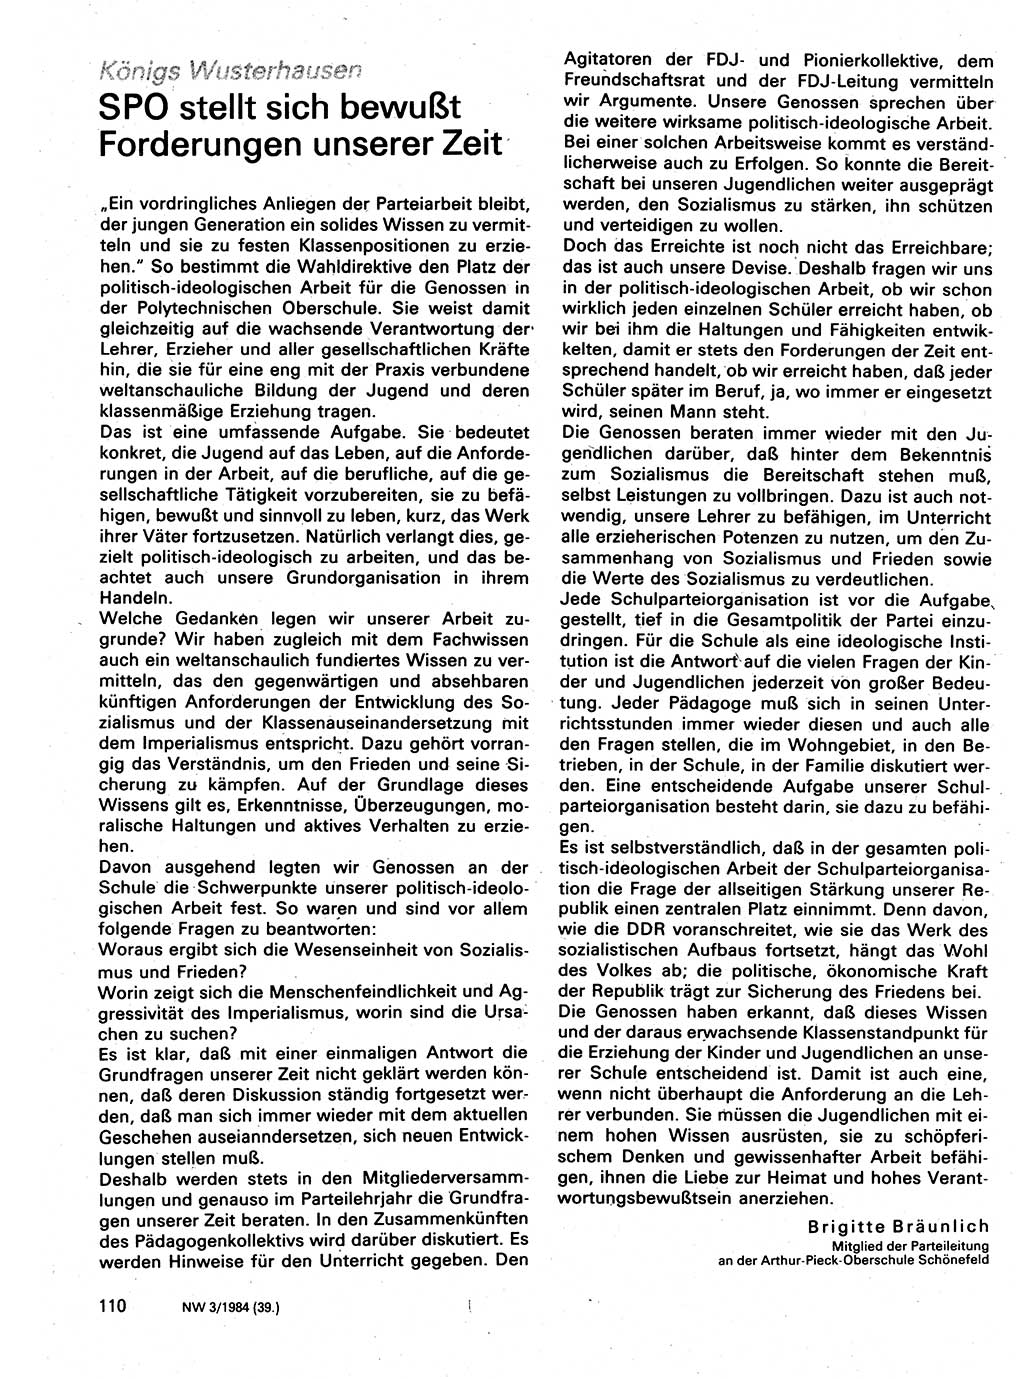 Neuer Weg (NW), Organ des Zentralkomitees (ZK) der SED (Sozialistische Einheitspartei Deutschlands) für Fragen des Parteilebens, 39. Jahrgang [Deutsche Demokratische Republik (DDR)] 1984, Seite 110 (NW ZK SED DDR 1984, S. 110)